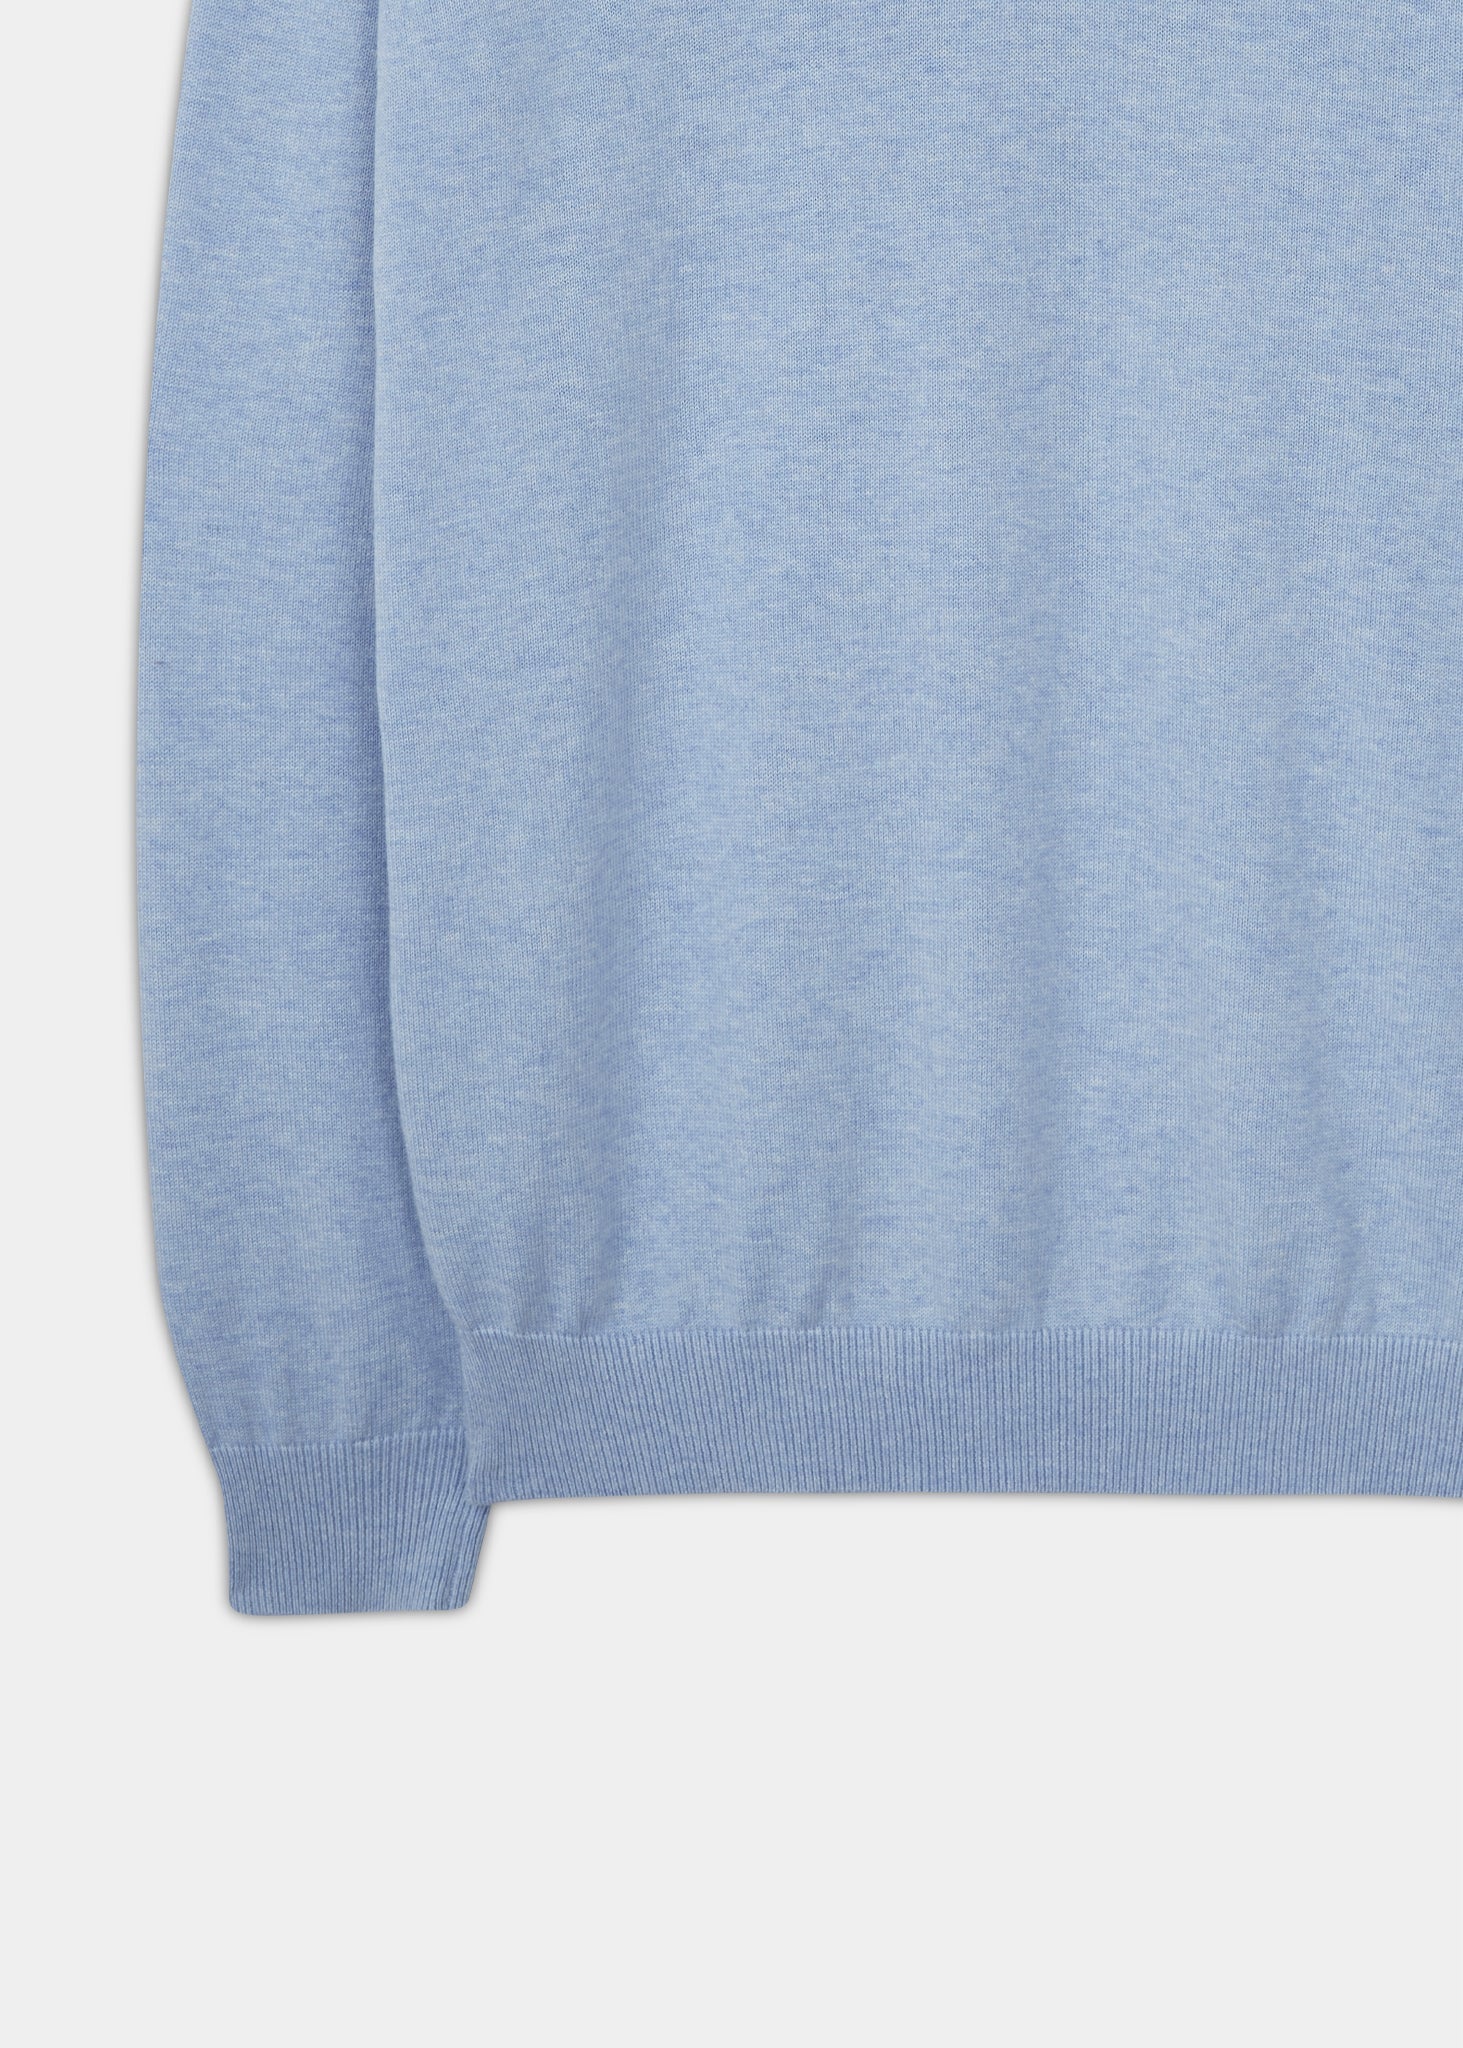 Alan Paine cotton cashmere v-neck jumper in steel blue